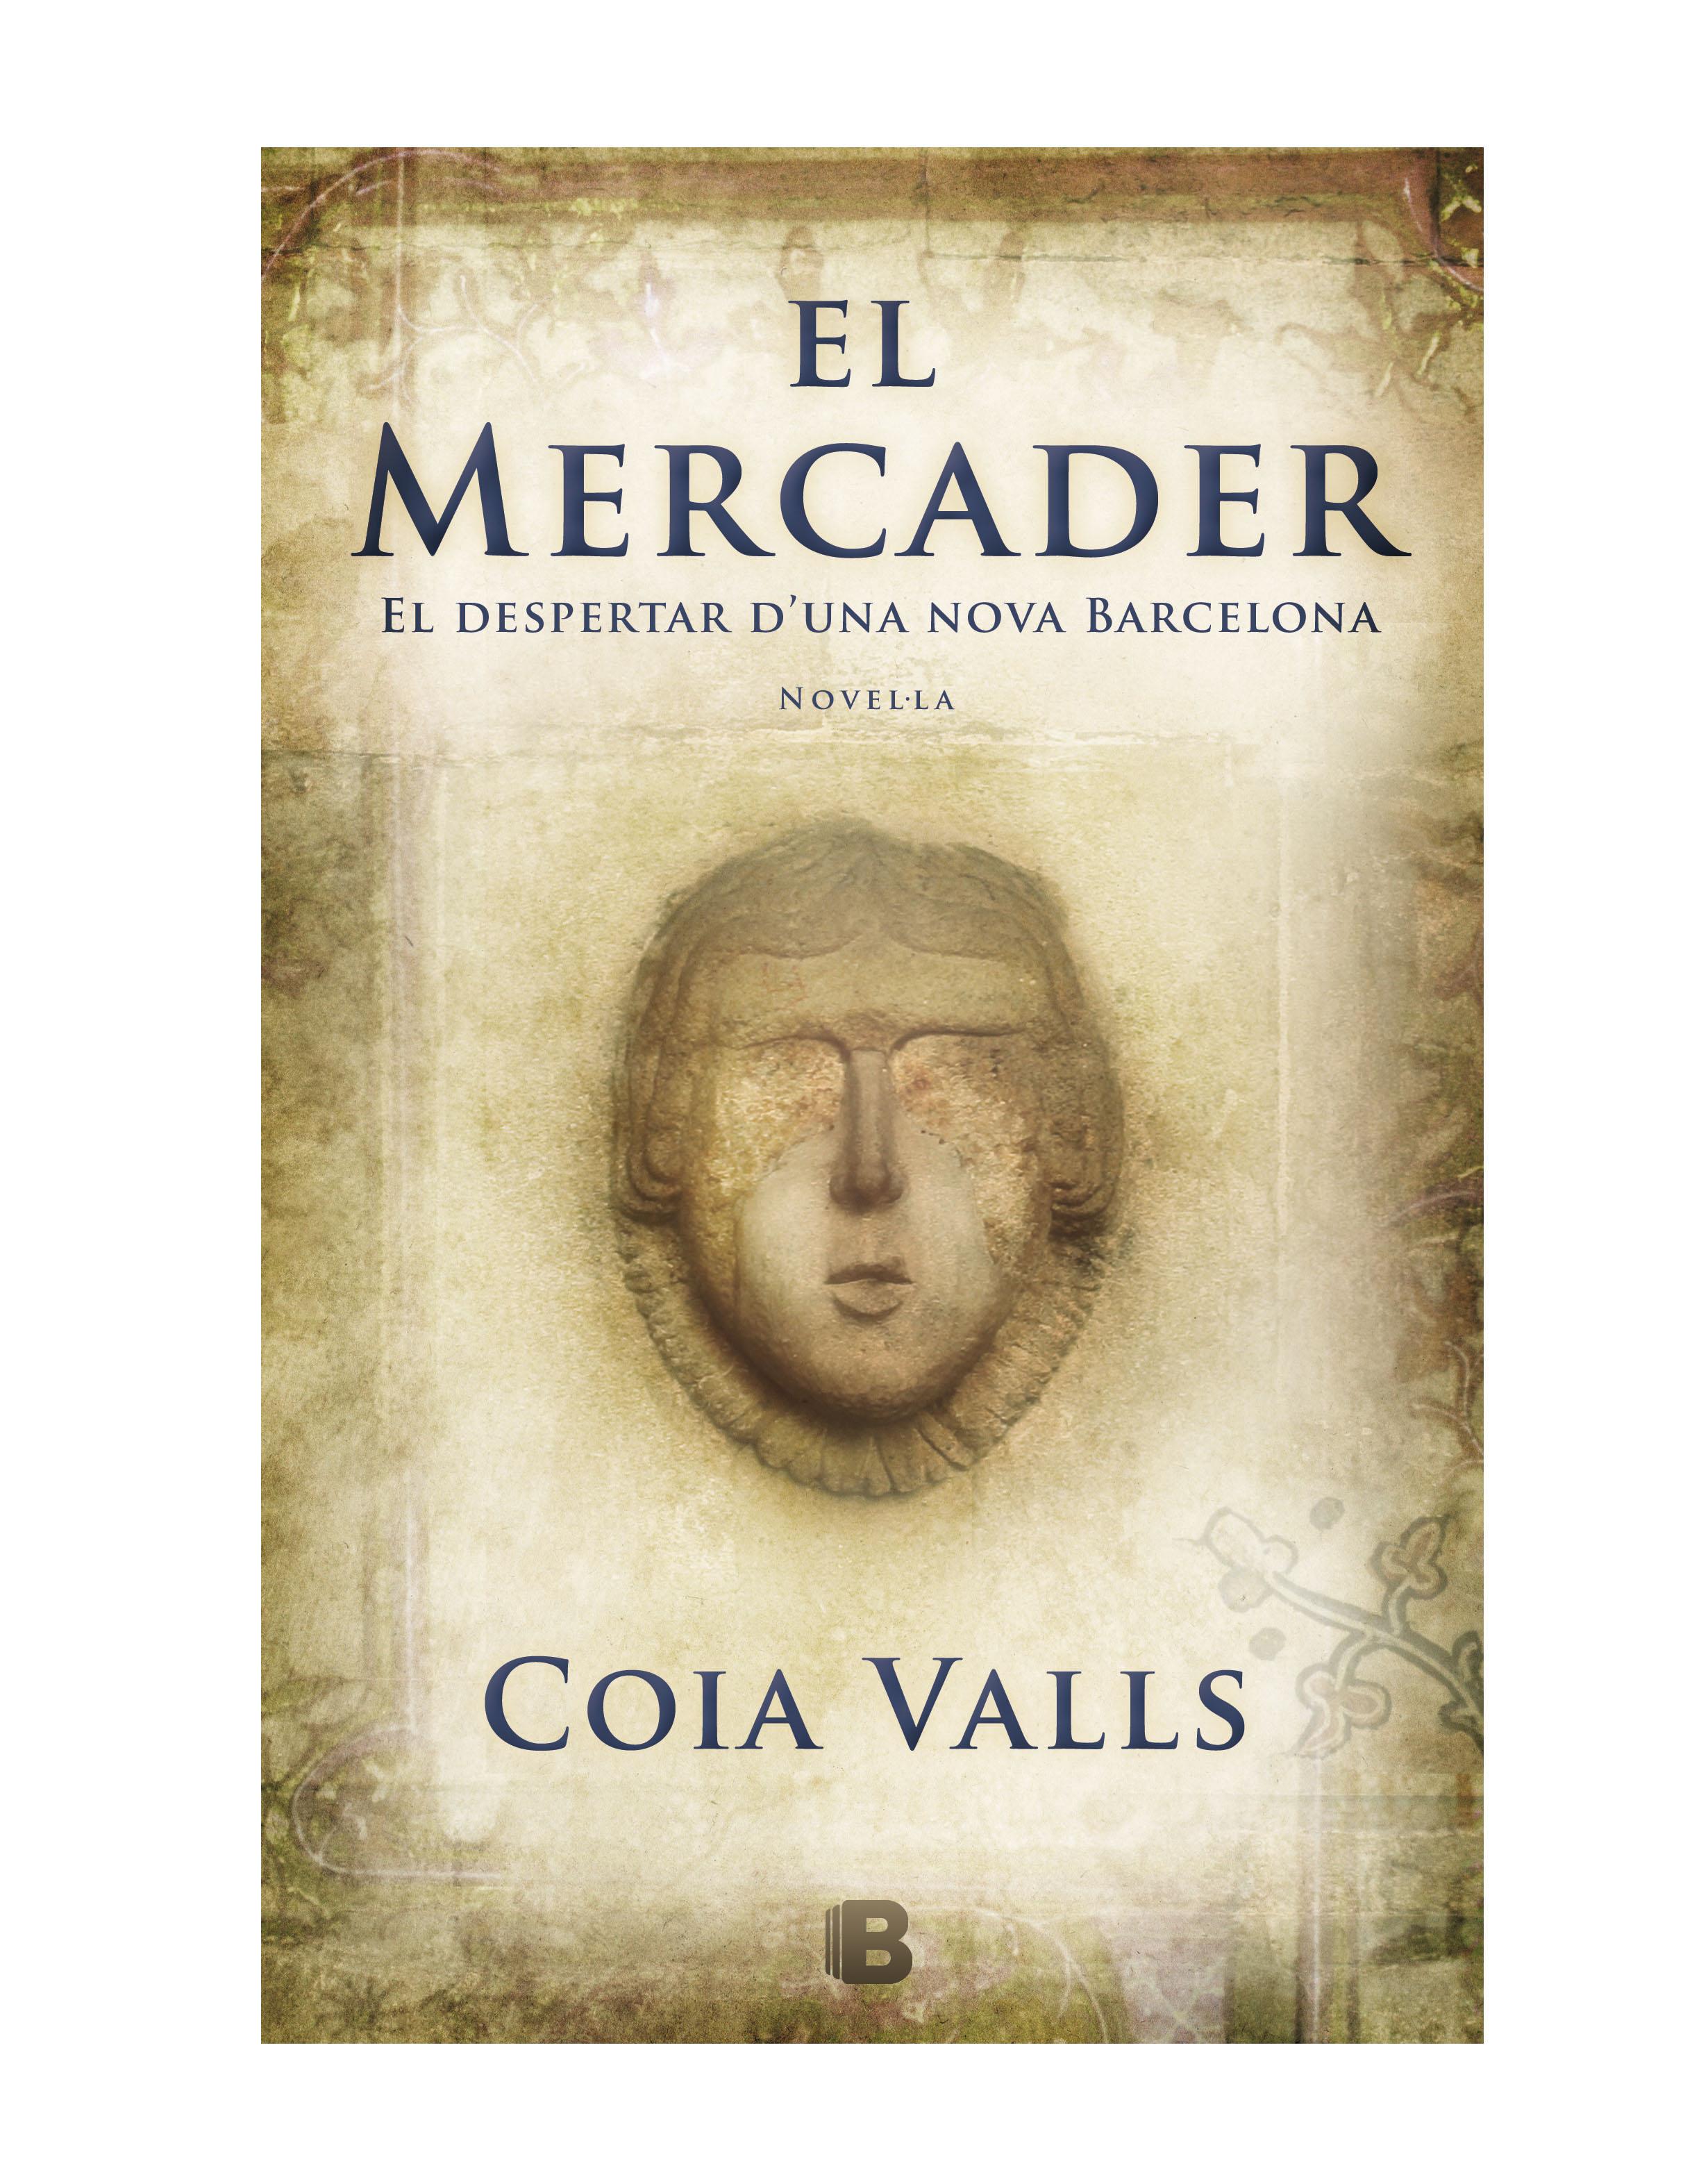 El mercader, la nova novel·la de Coia Valls